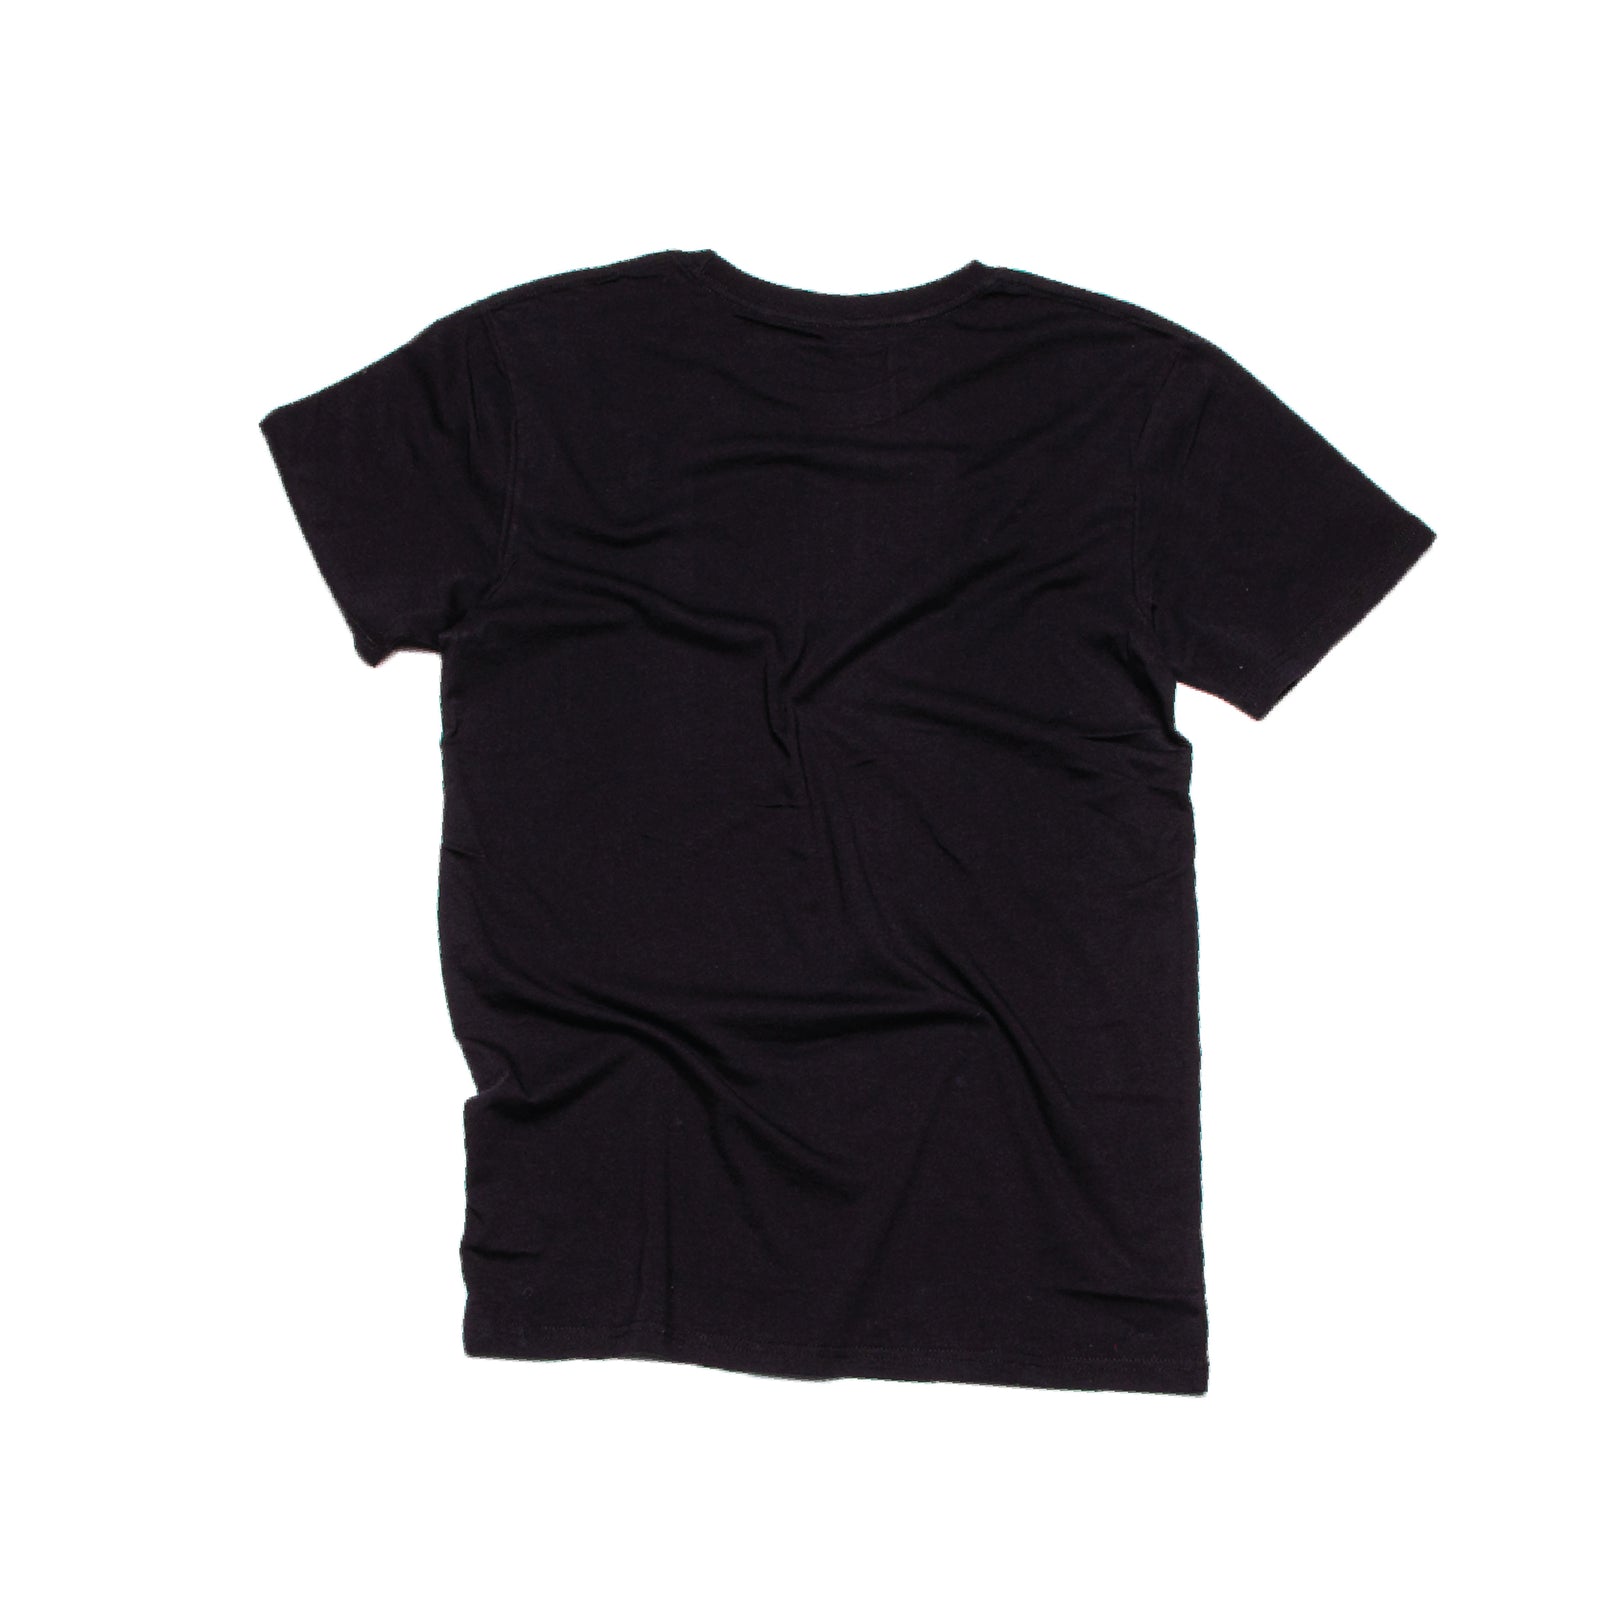 Thomas x McNeil T-Shirt Black